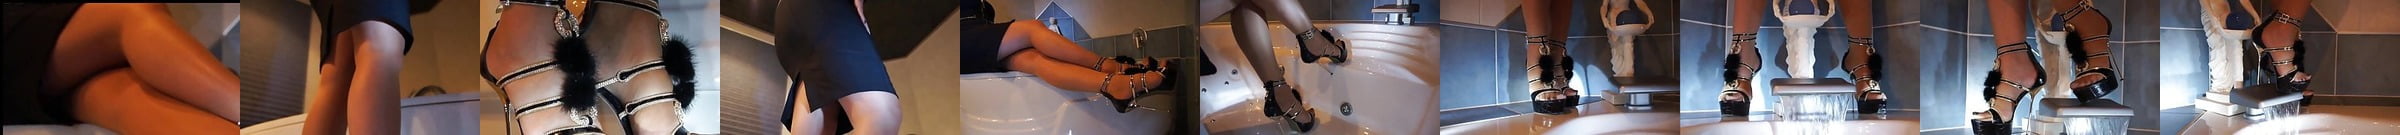 Los Vídeos De Porno Cuarto De Baño 170 Xhamster 